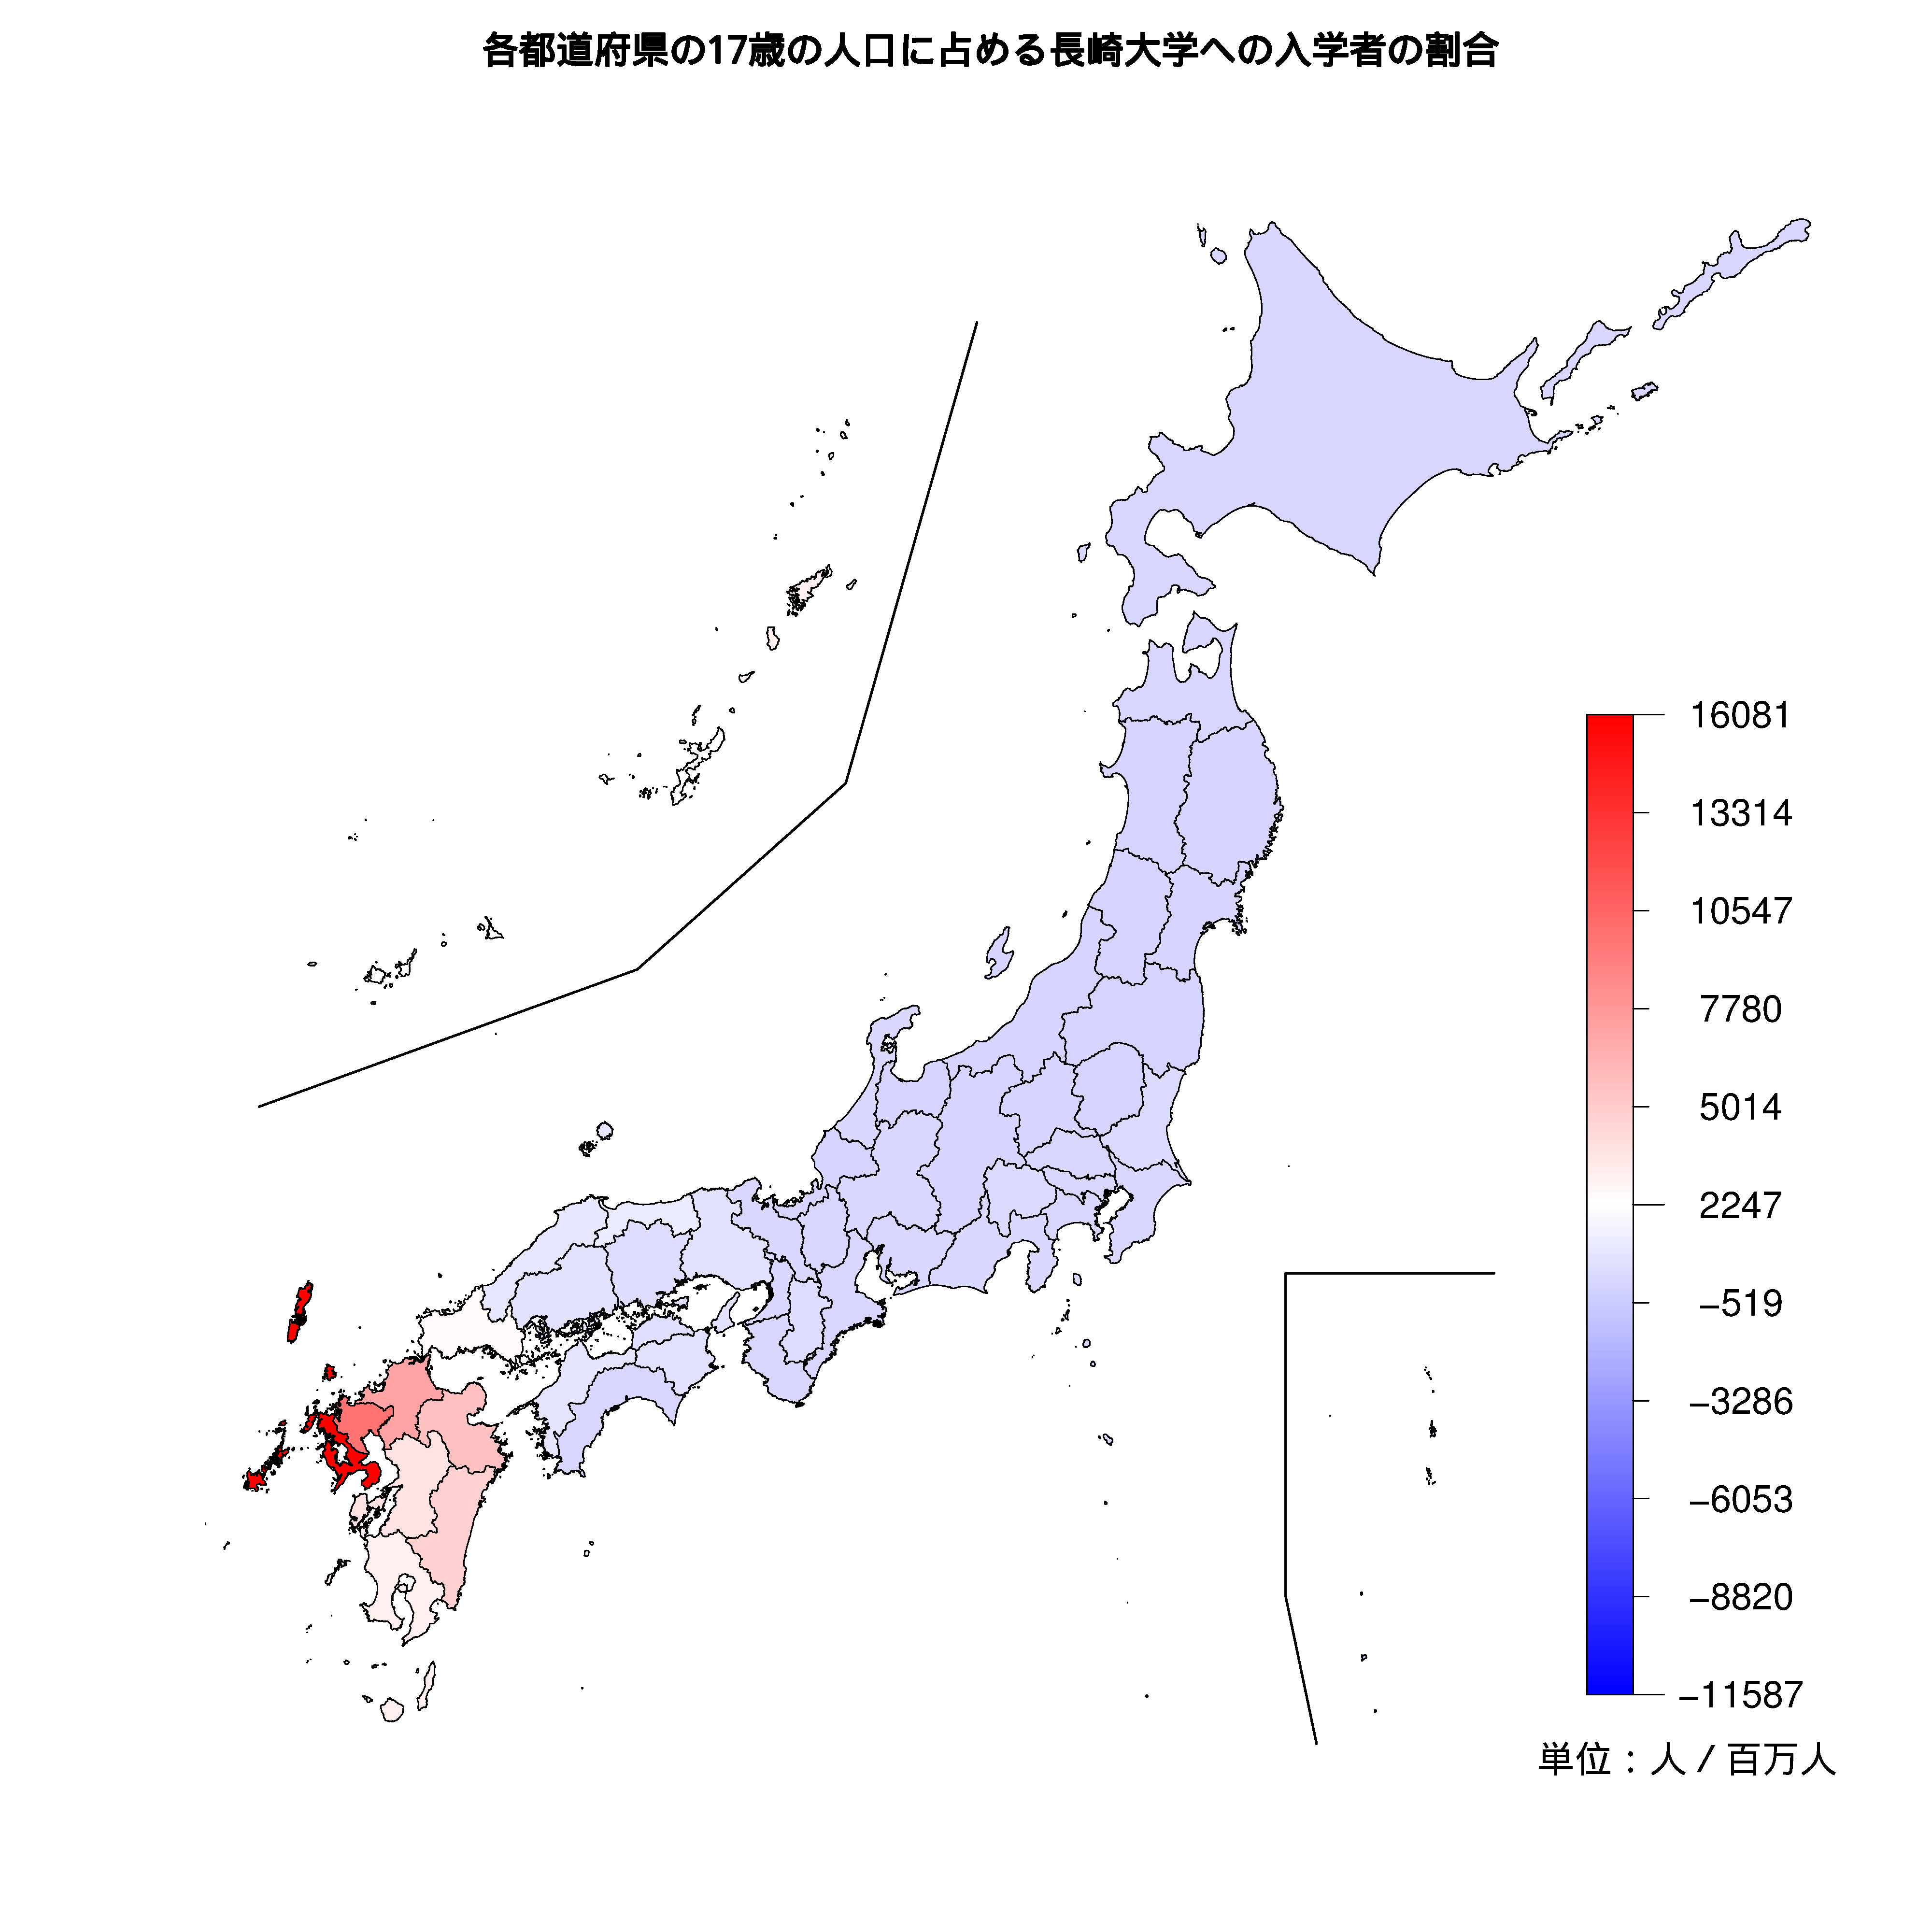 長崎大学への入学者が多い都道府県の色分け地図